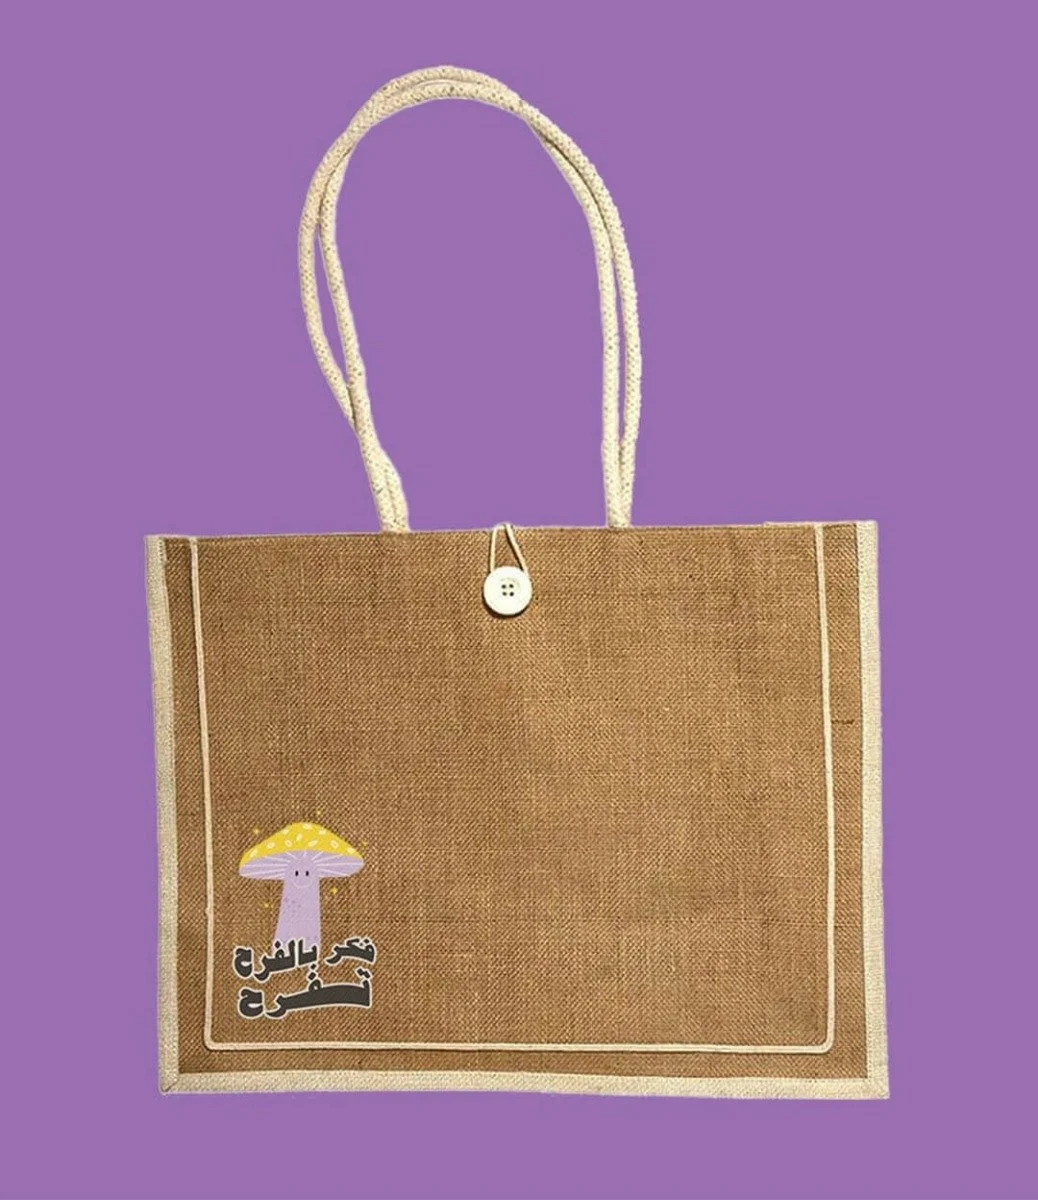 حقيبة جوت بيتش توتي للنساء، قابلة لإعادة الاستخدام مع مقبض تصميم فكر بالفرح تفرح